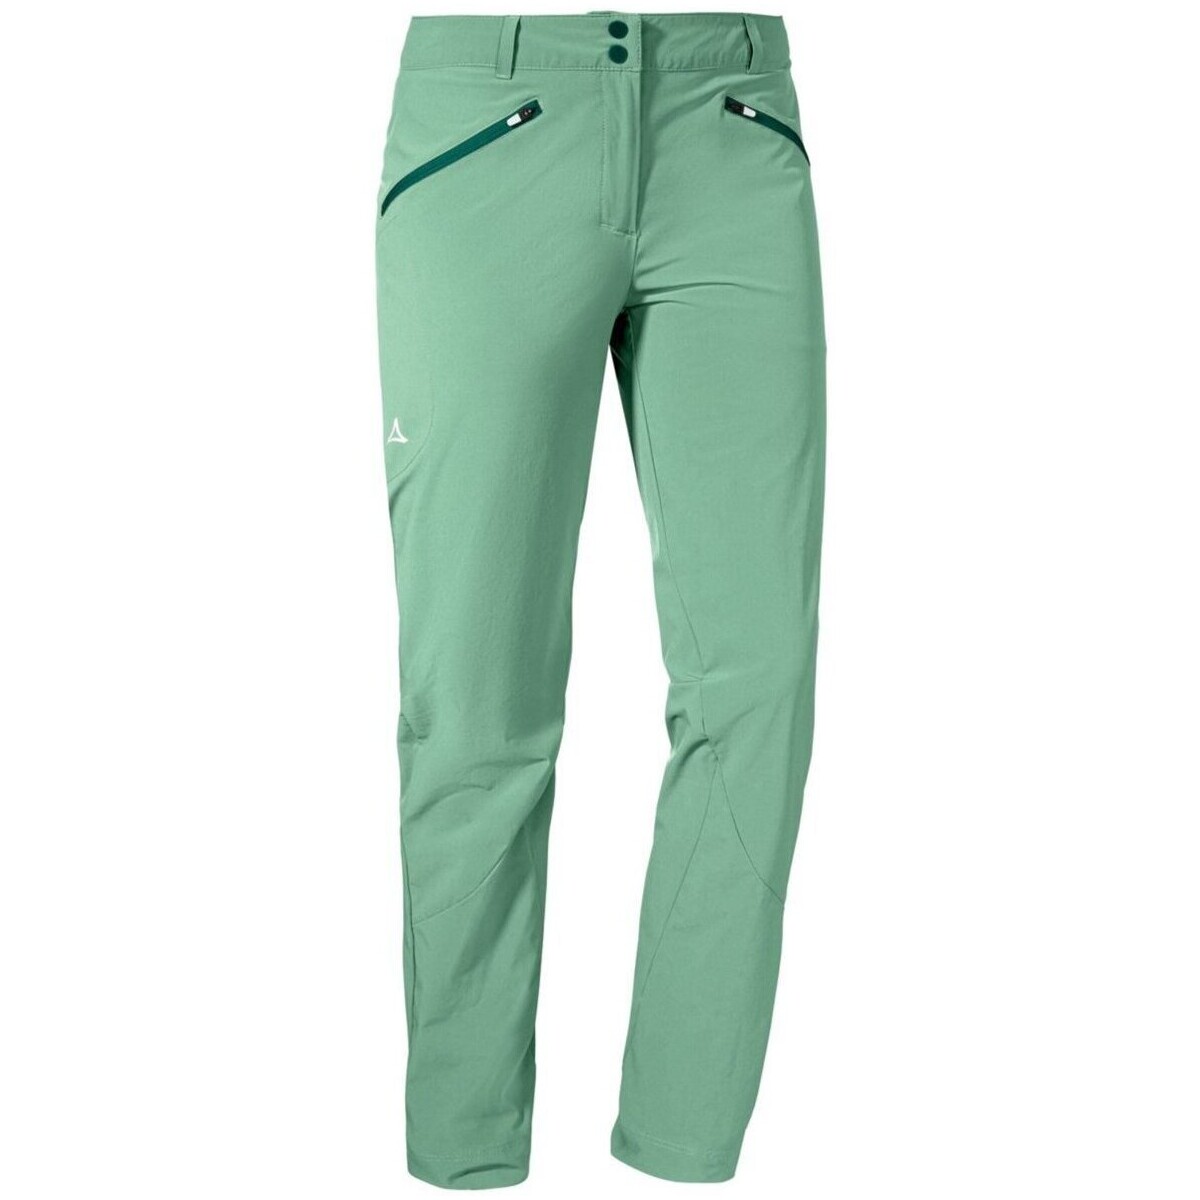 Kleidung Jungen Shorts / Bermudas SchÖffel Sport Pants Hestad L 2013210 23521 6055 Other